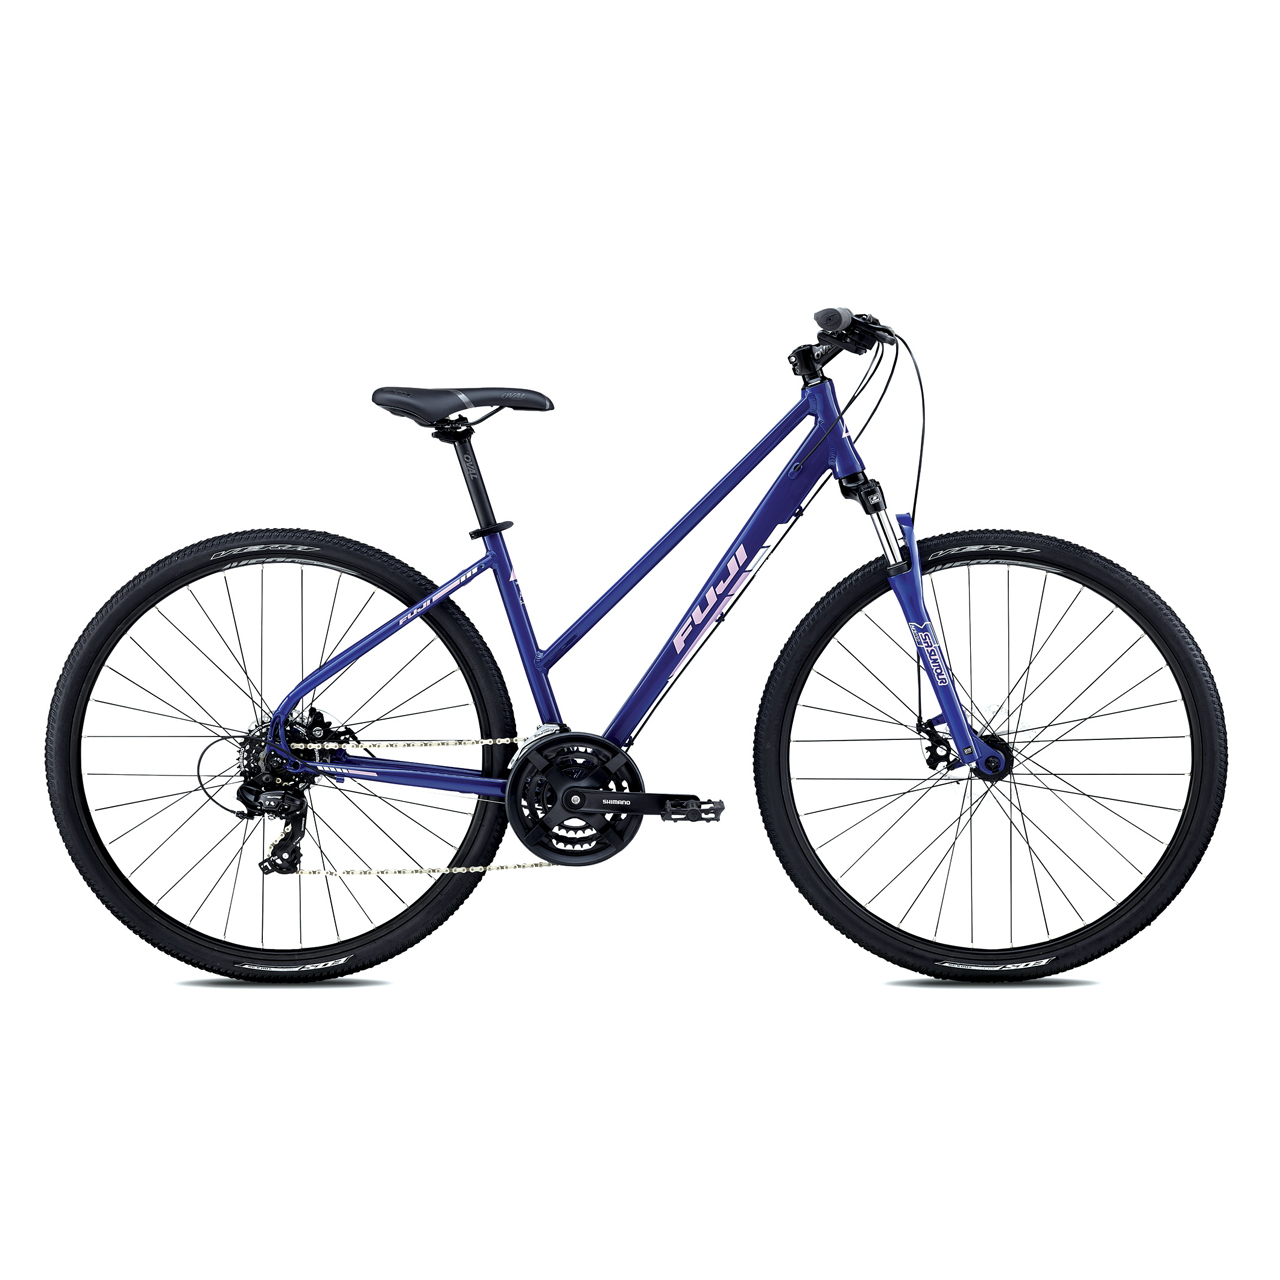 دوچرخه شهری فوجی Traverse 1.9 ST رنگ آبی تیره 2018